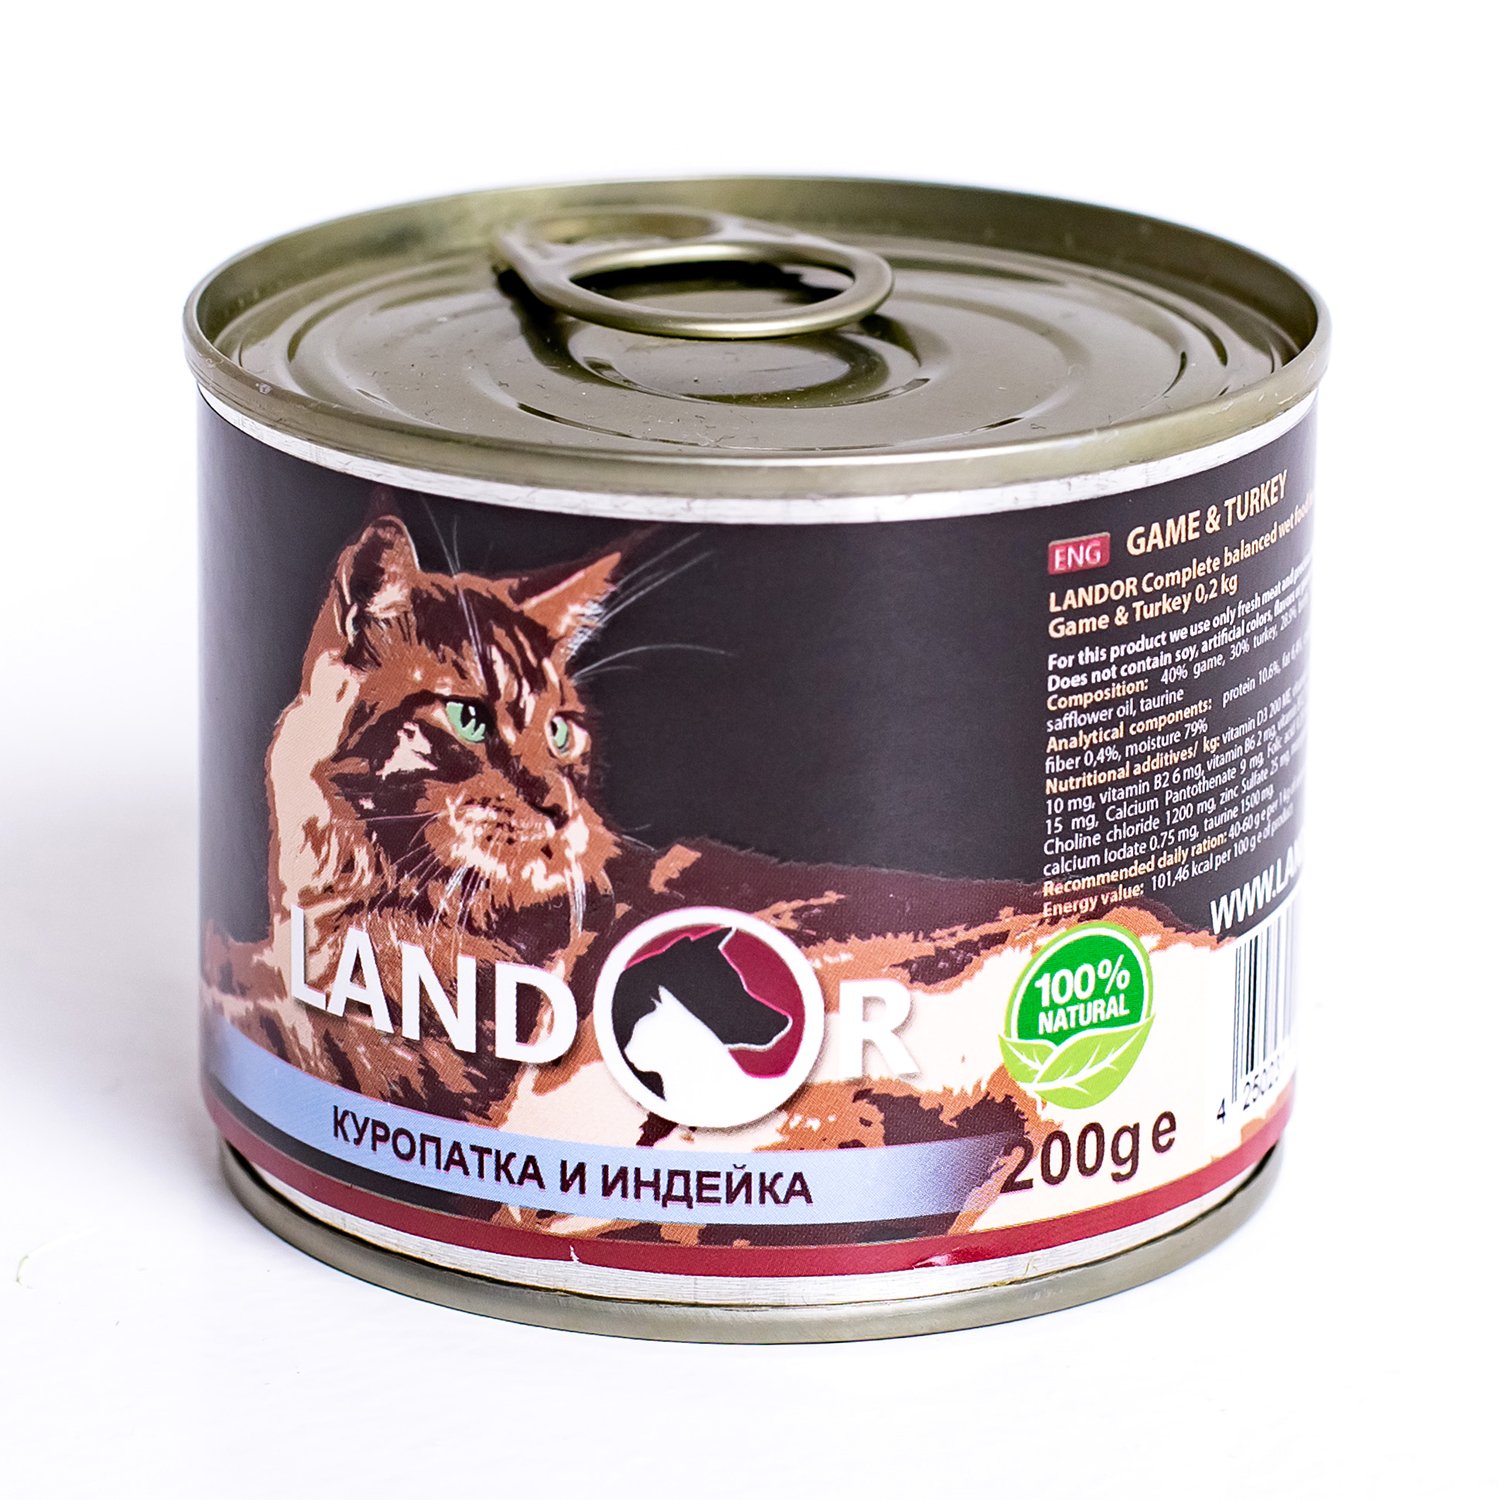 Корм ландор для собак. Landor консервы для кошек. Влажный корм Landor. Влажный корм Landor для собак. Landor консервы для собак.